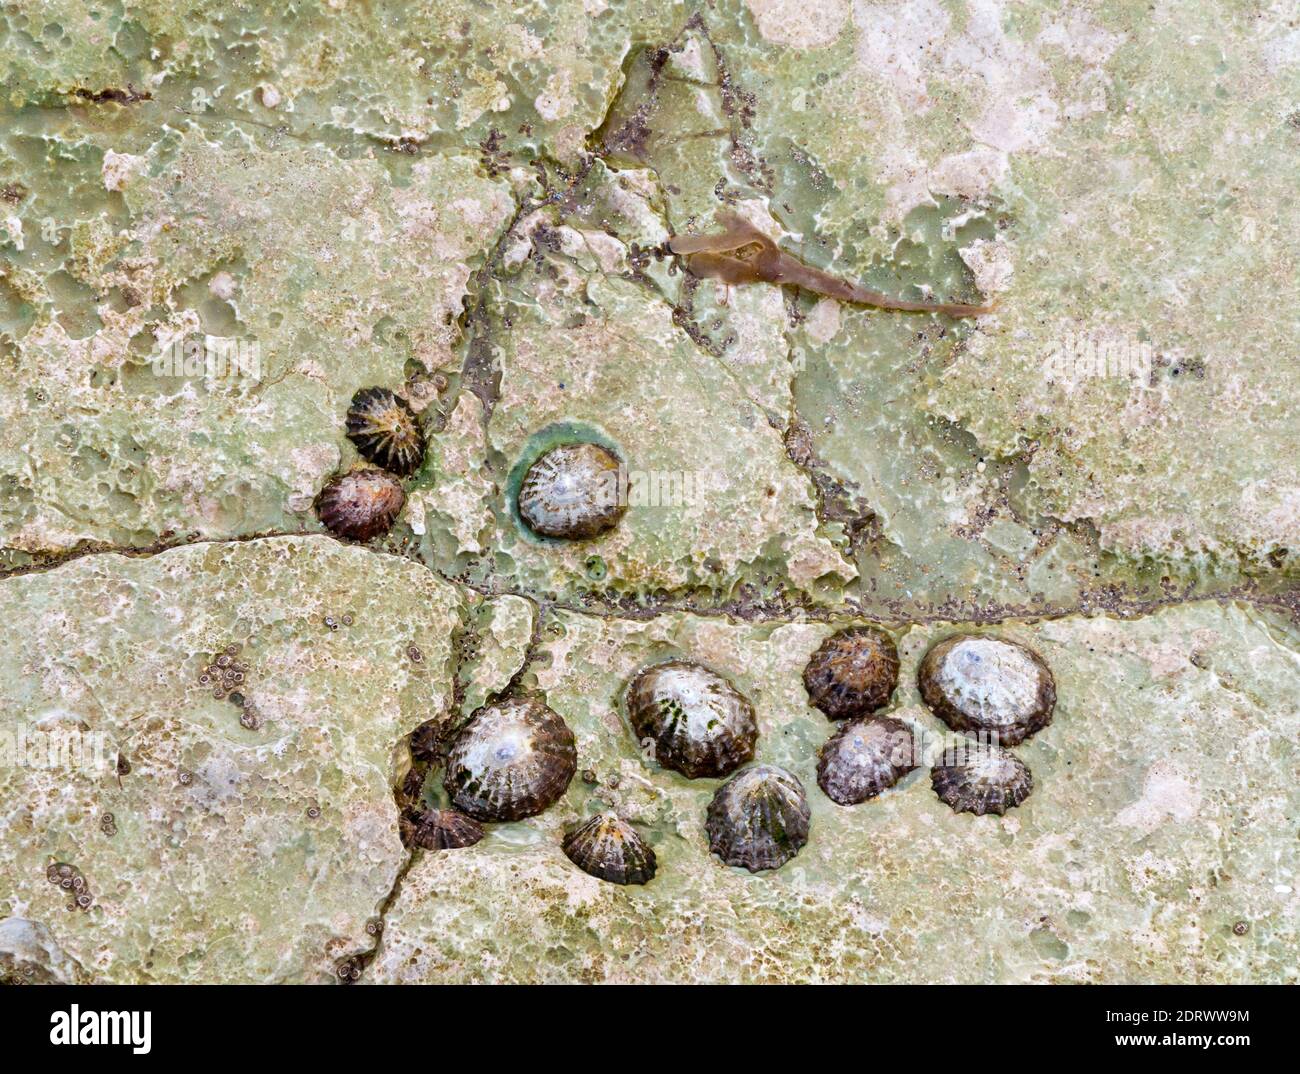 Gruppo di limpet un tipo di lumaca acquatica con conchiglie coniche attaccate ad una roccia su una spiaggia a bassa marea. Foto Stock